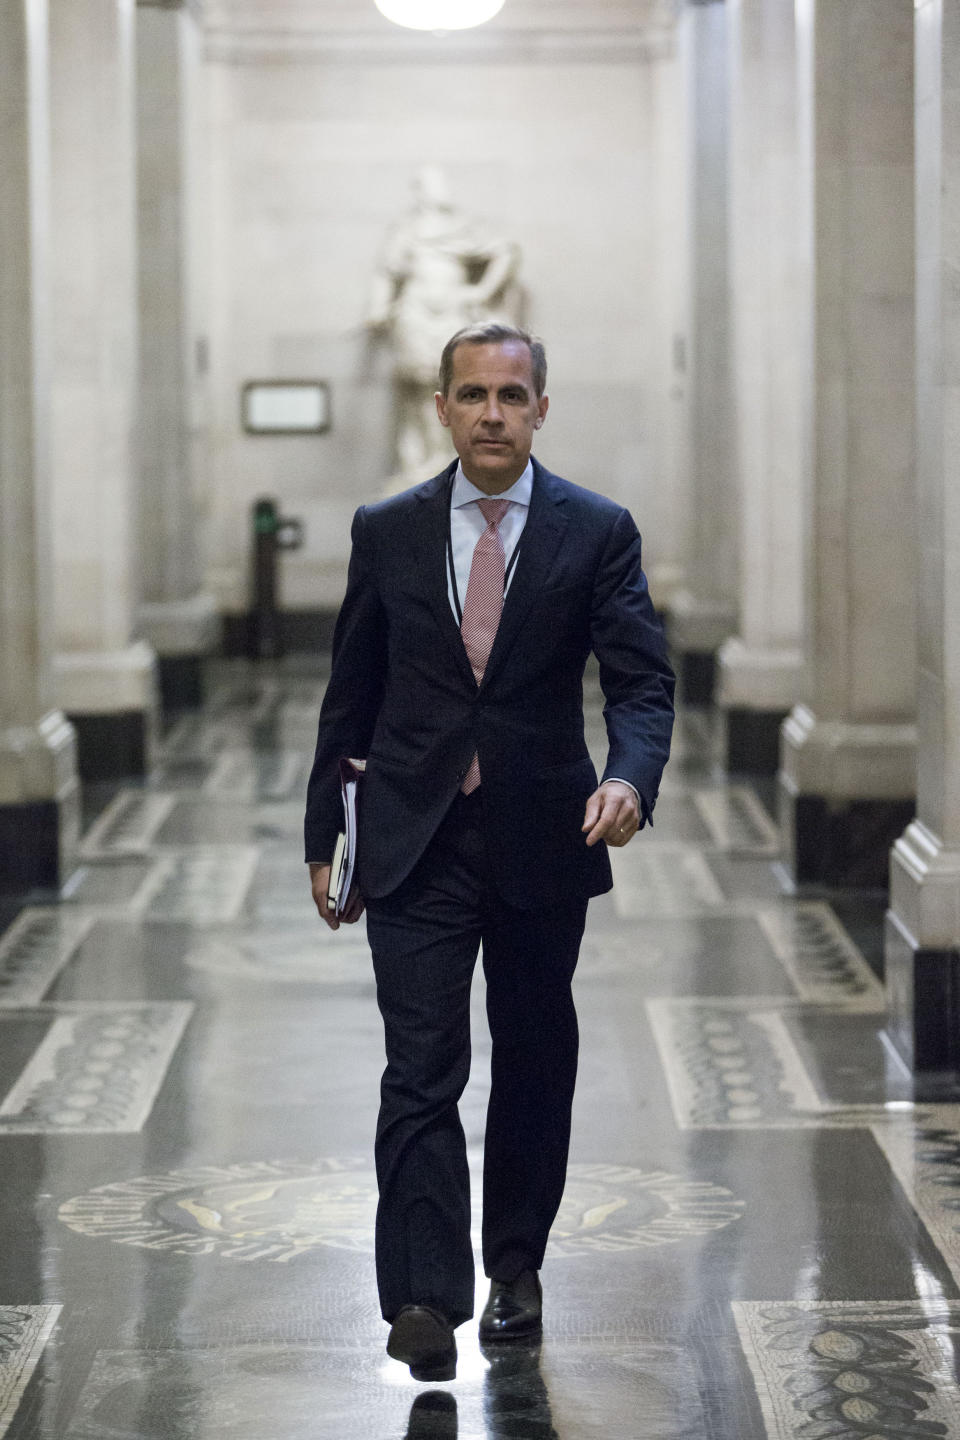 New Bank of England Governor